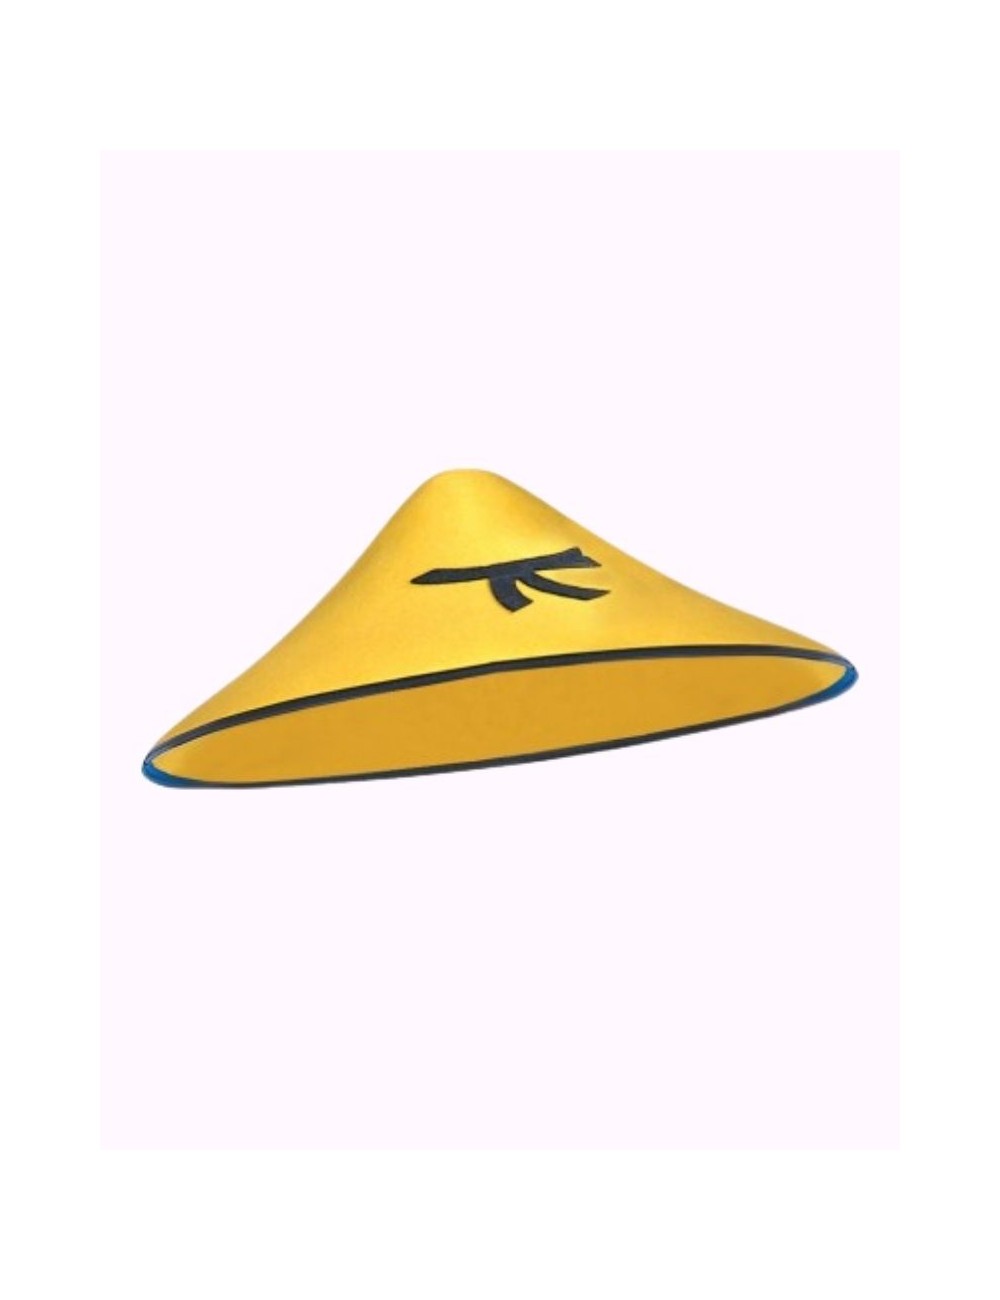 Chinesischer gelber Hut